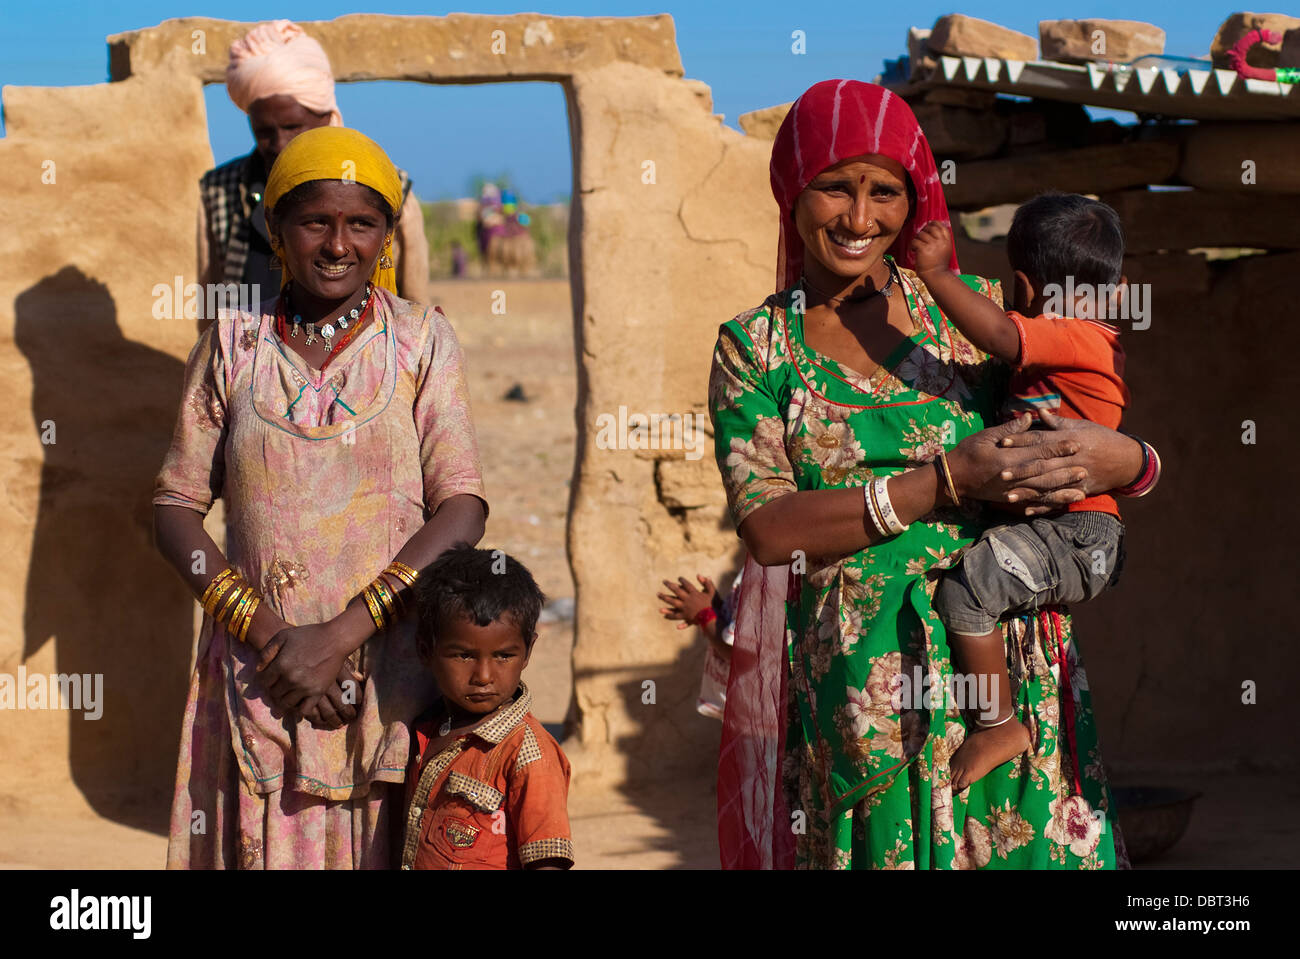 Famille Rajasthani devant leur hutte de terre le 27 février 2013 à Jaisalmer, Inde. Banque D'Images